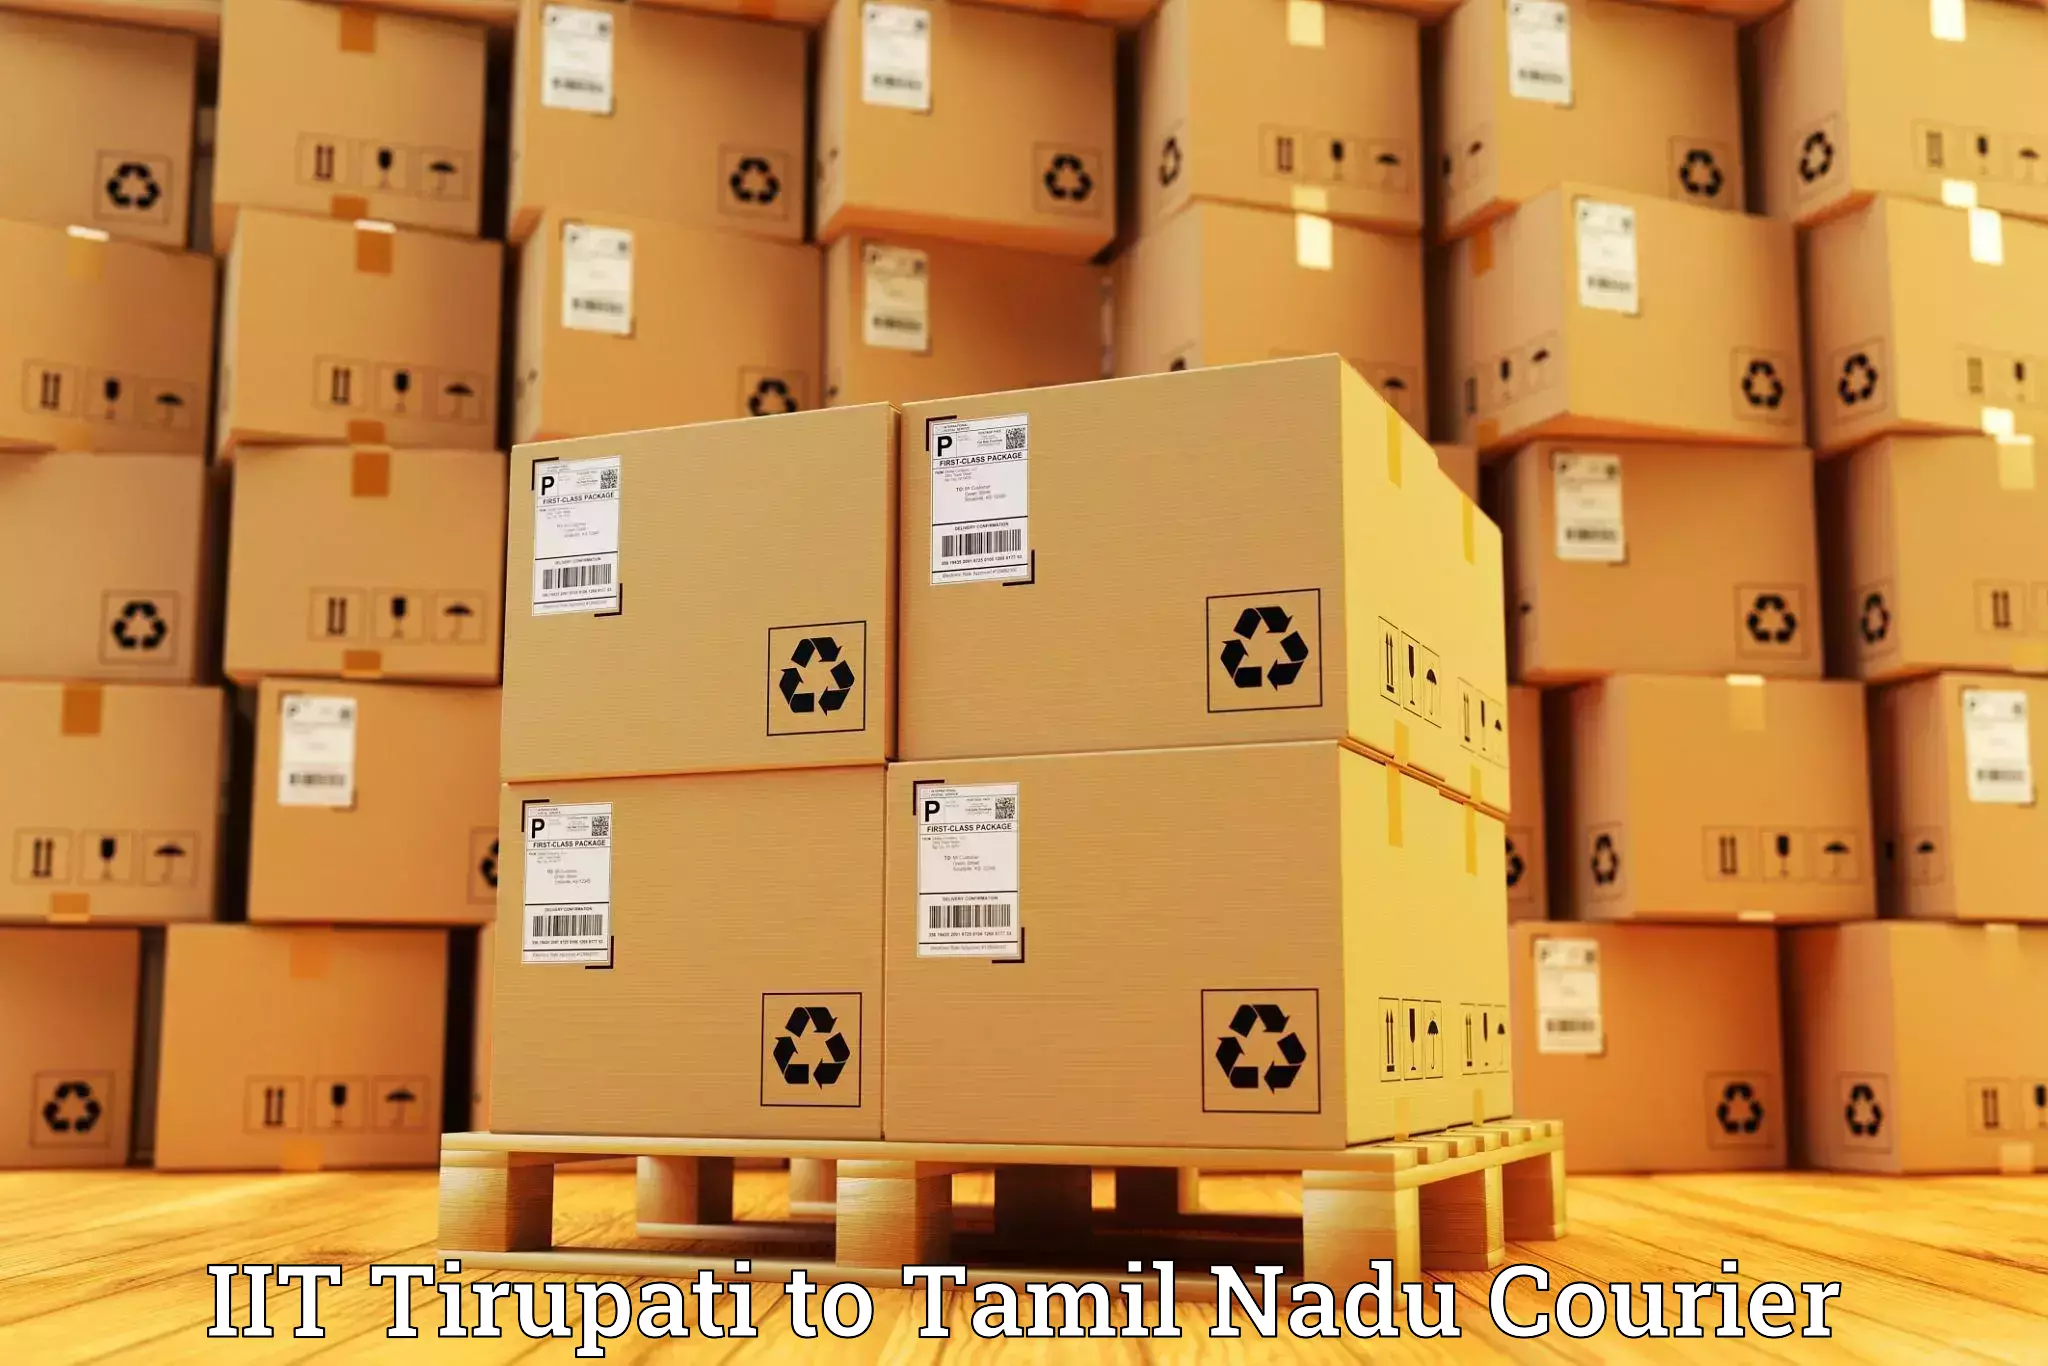 Nationwide parcel services IIT Tirupati to Sholinghur